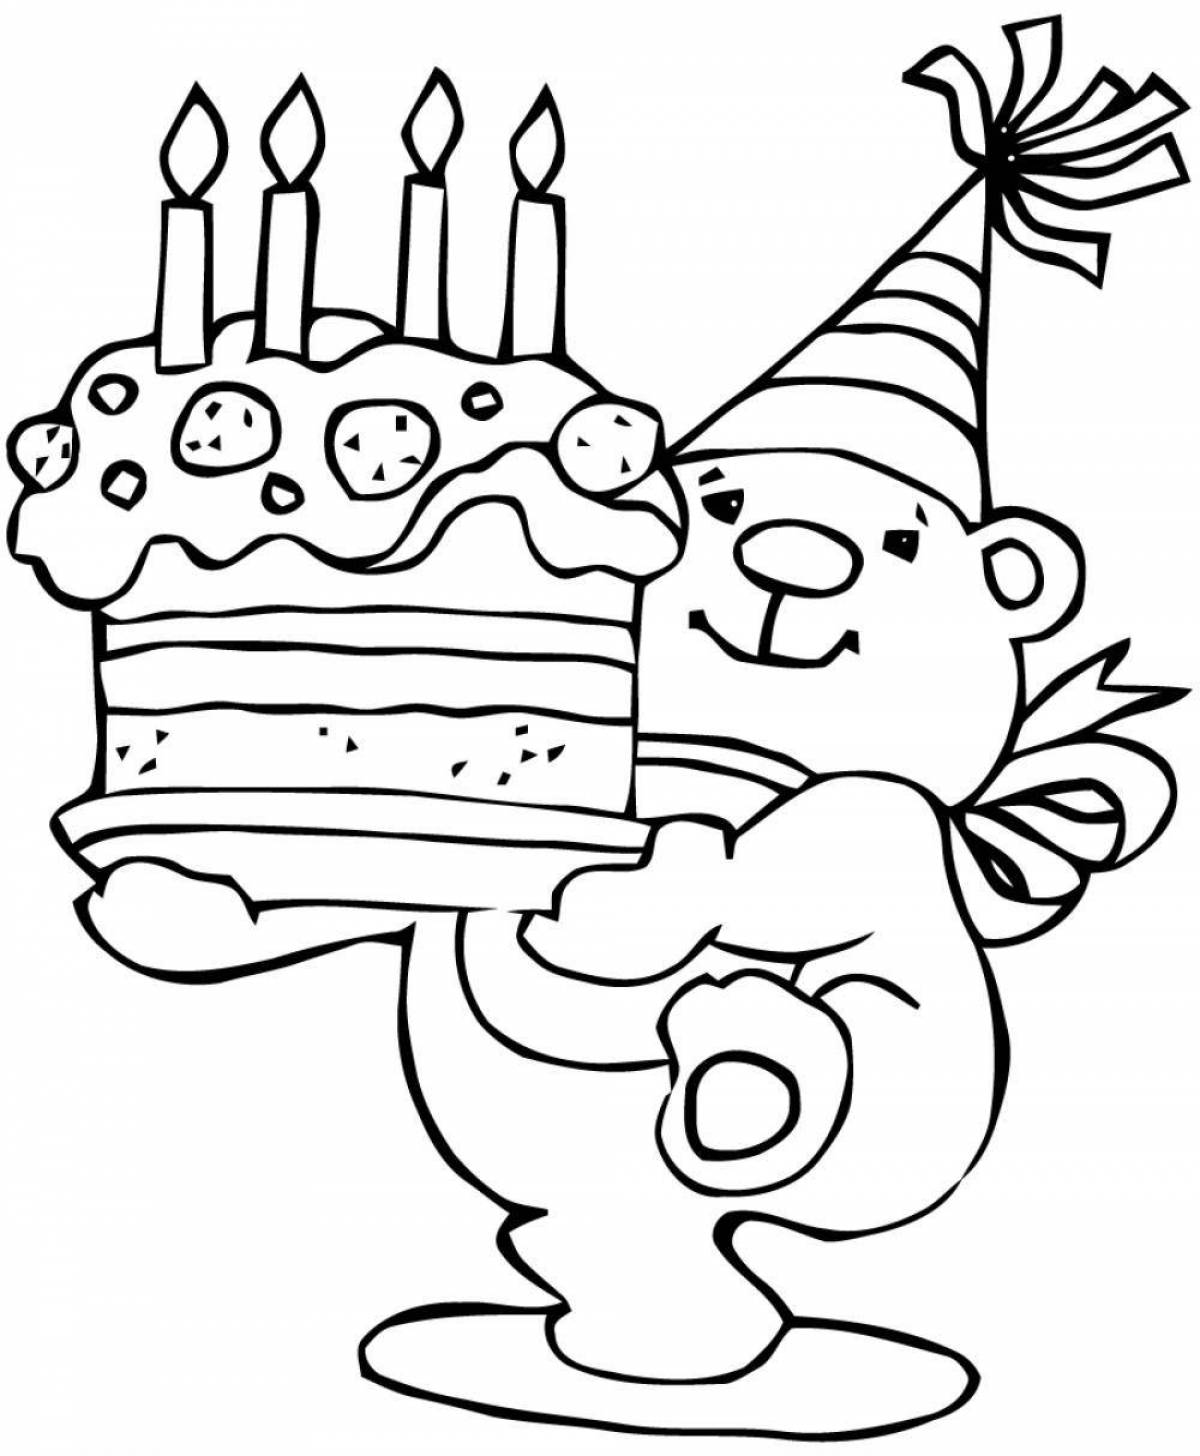 Рисовать рисунки на день рождения. Рисункиэ на день рождения. Раскраска "с днем рождения!". Рескюунки на день рождения. Раскраска надинрошдения.